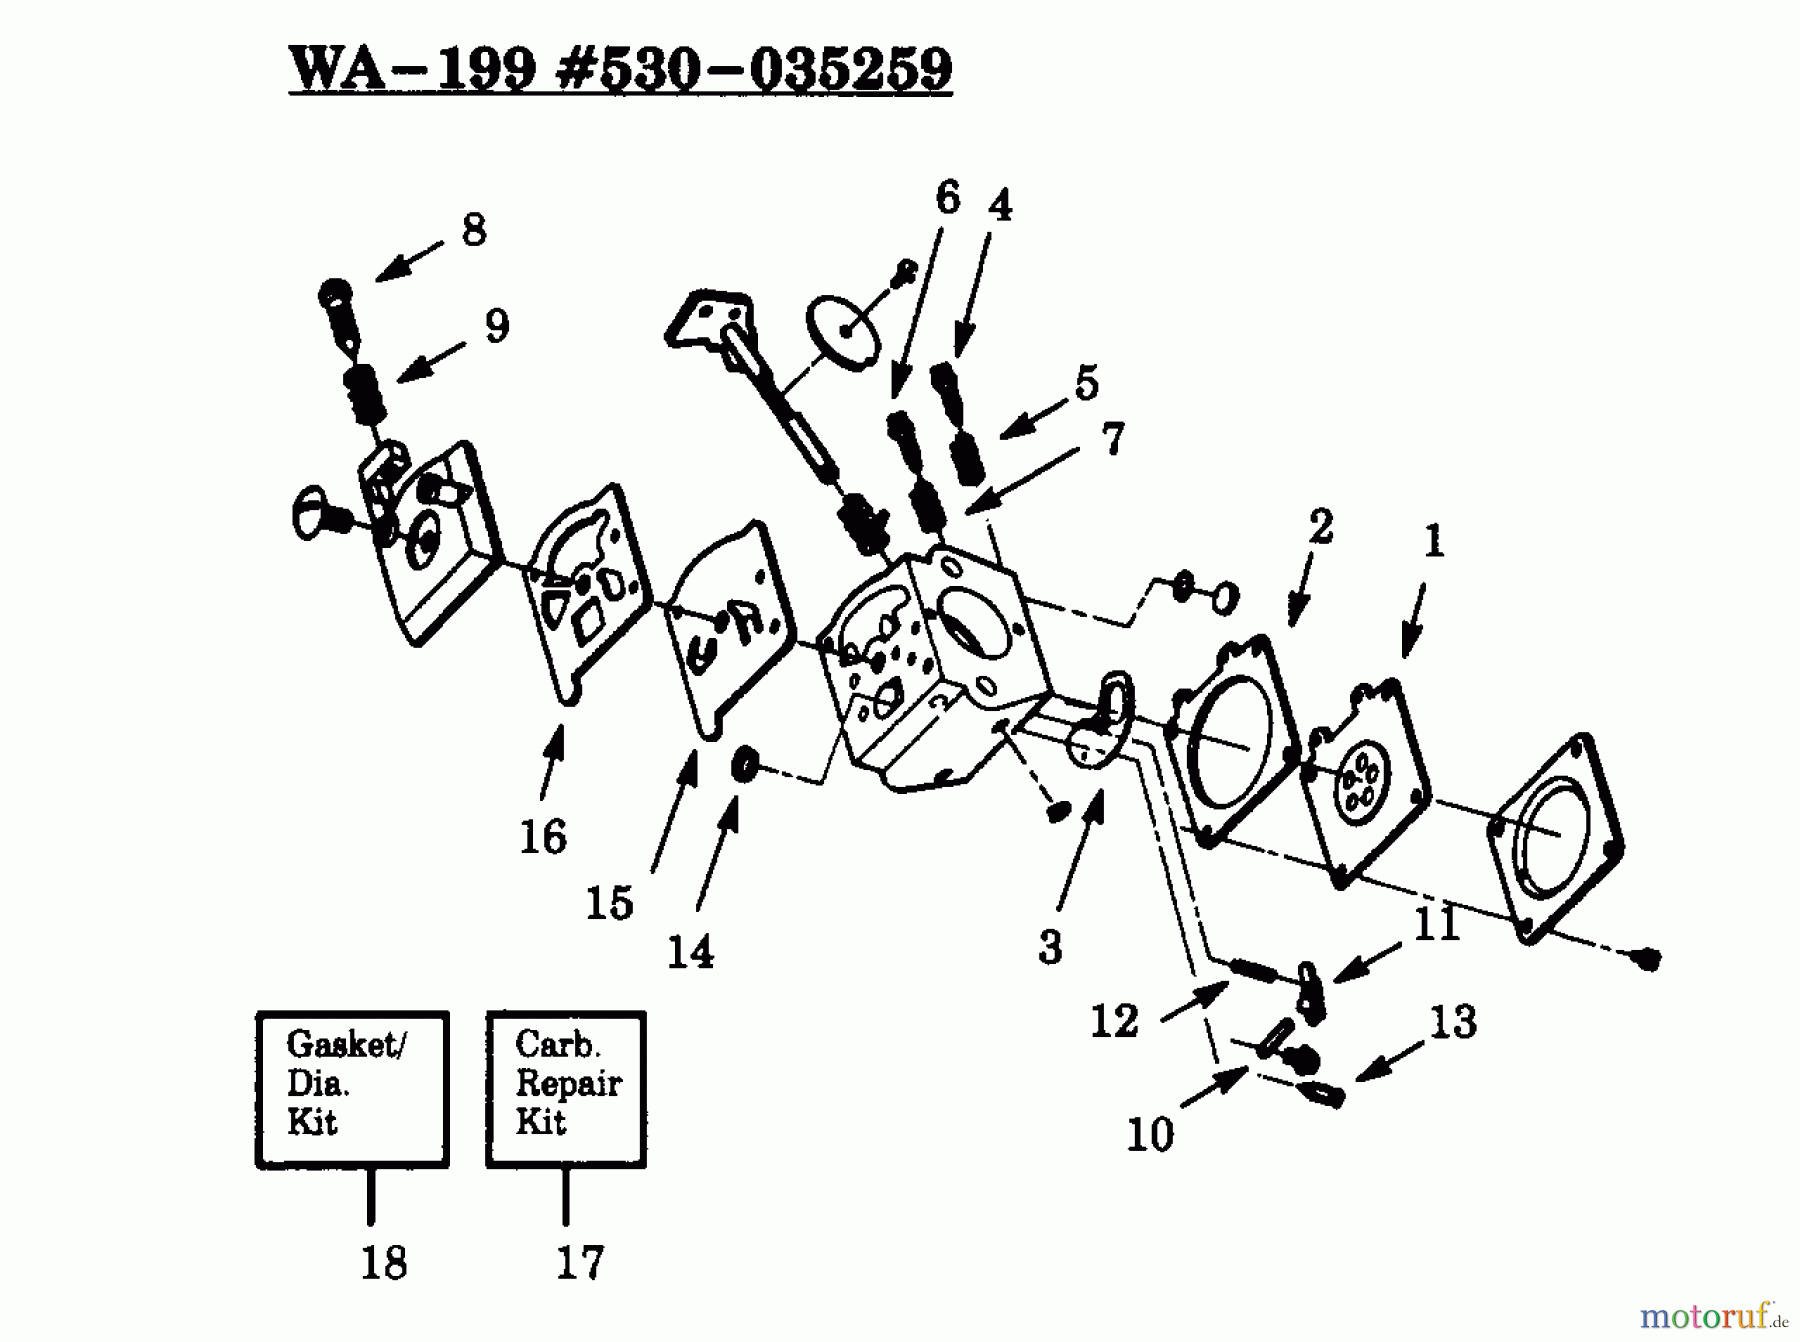  Poulan / Weed Eater Motorsensen, Trimmer PP114 - Poulan Pro String Trimmer CARBURETOR WA-199